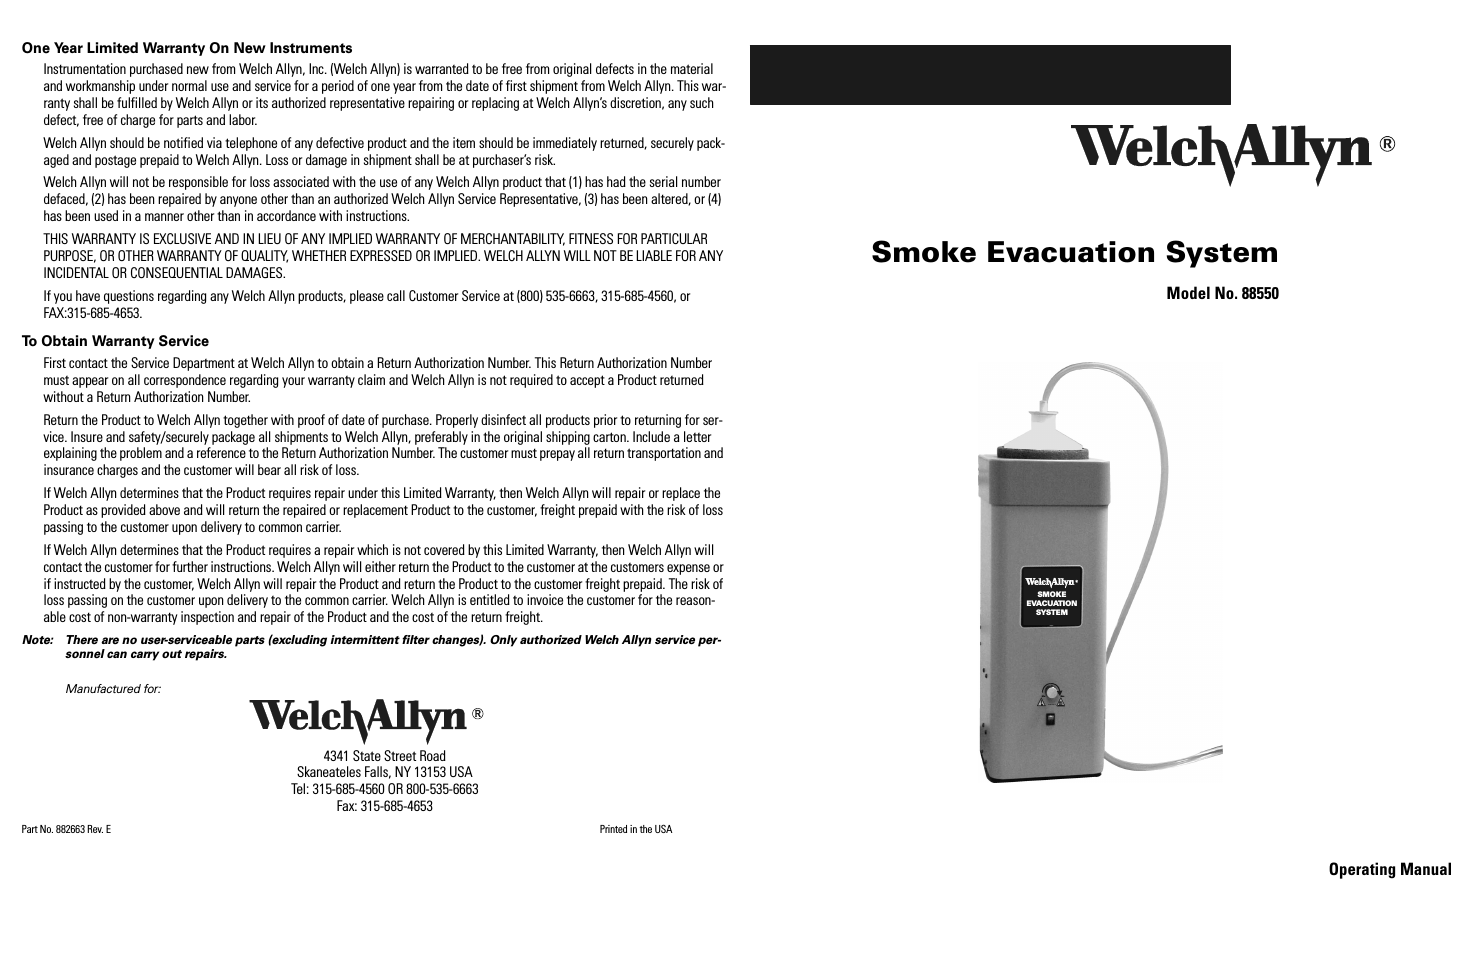 88550 Smoke Evacuation System - User Manual